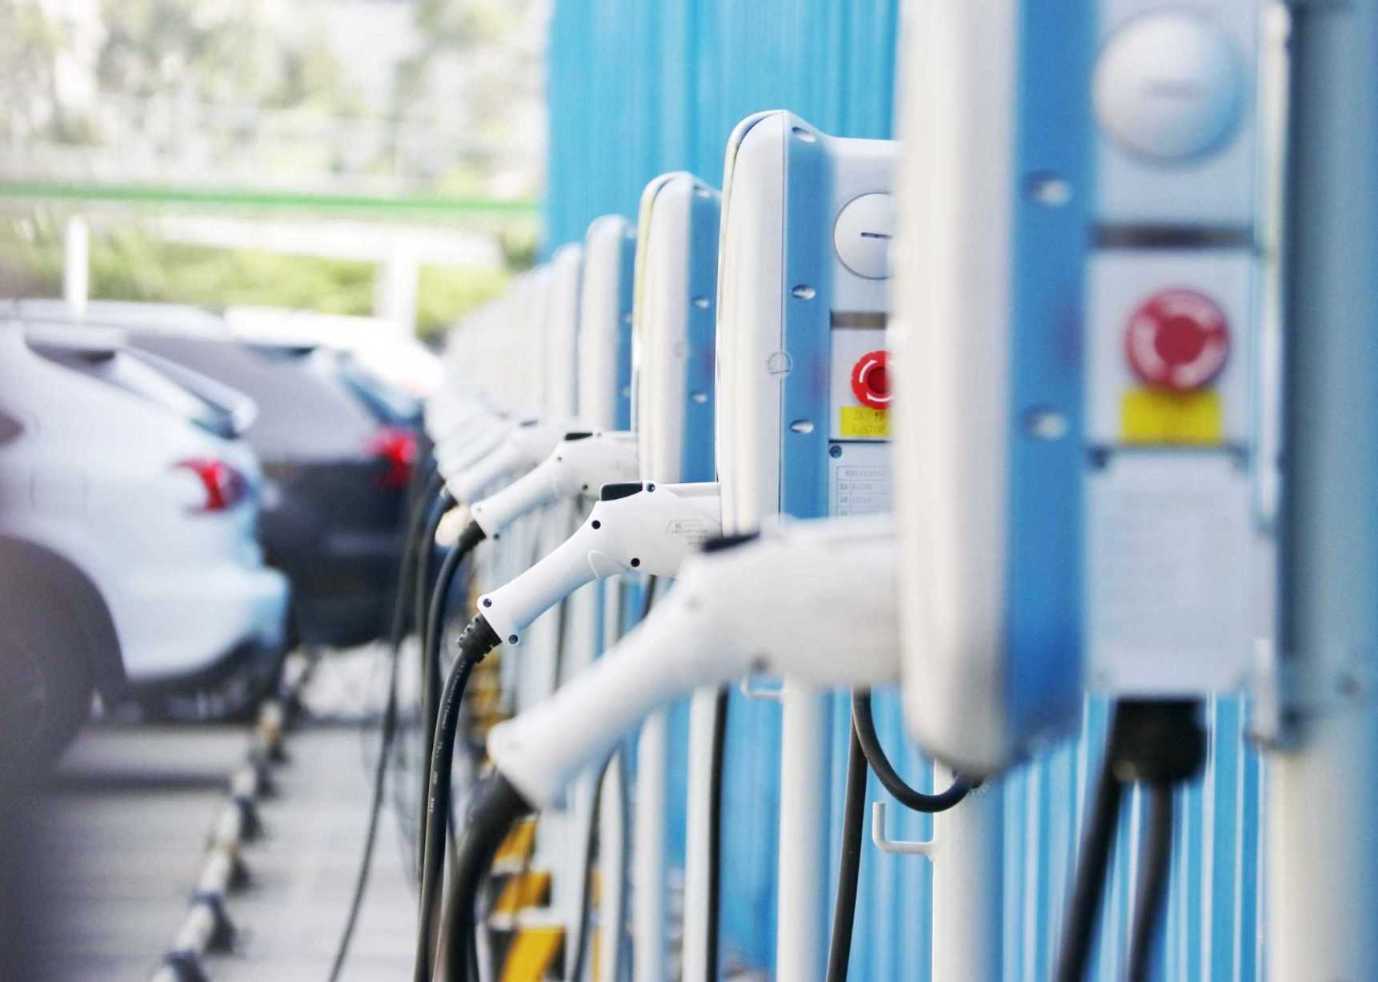 1-8 月全国充电基础设施增量为 169.8 万台，公共充电桩增量同比上涨 232.9%